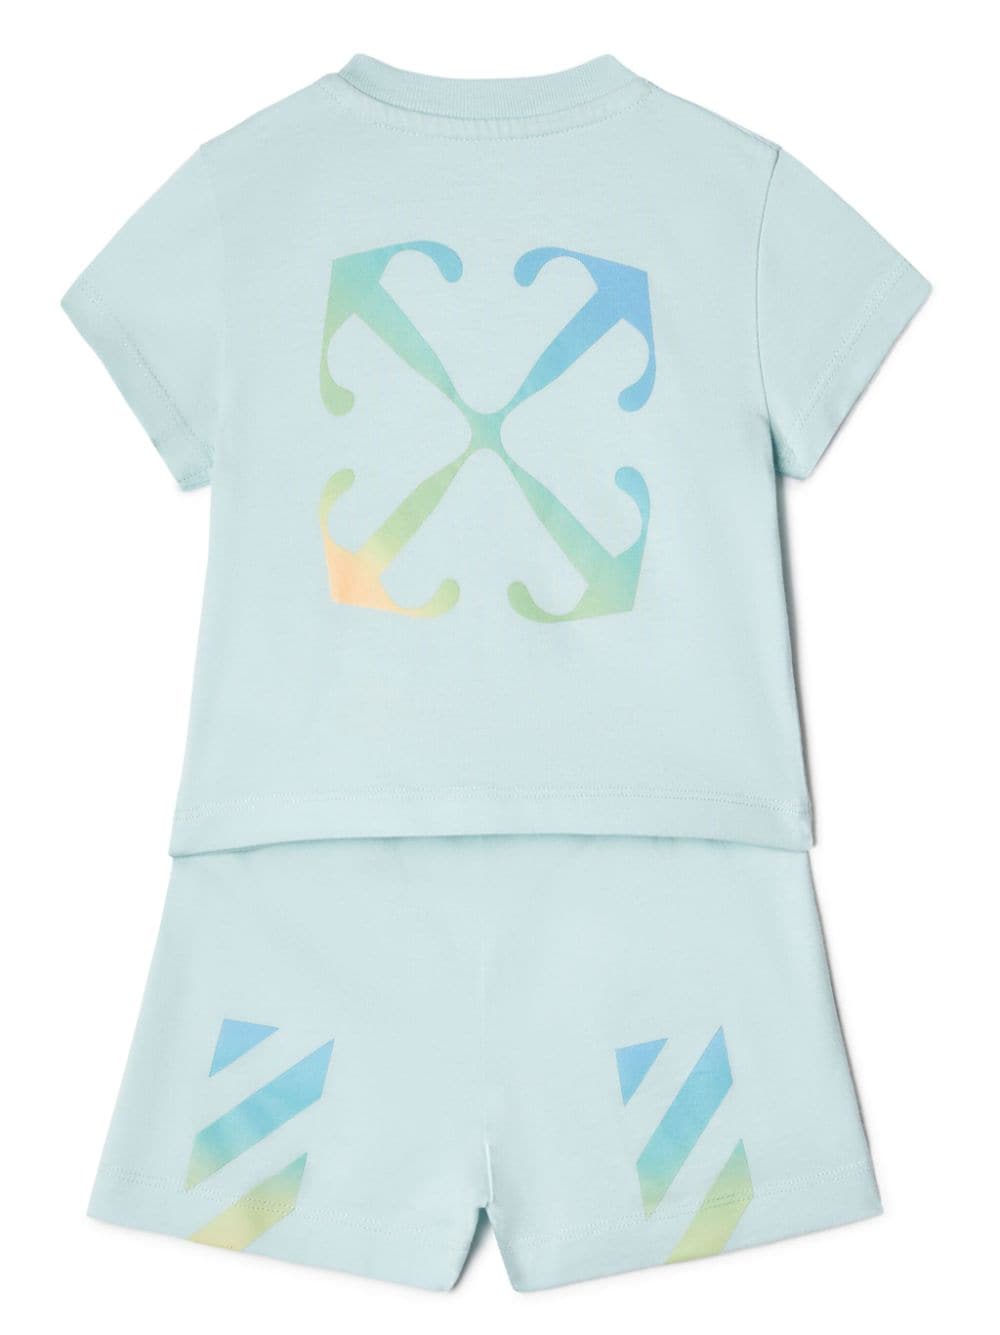 Completo azzurro per neonato con logo